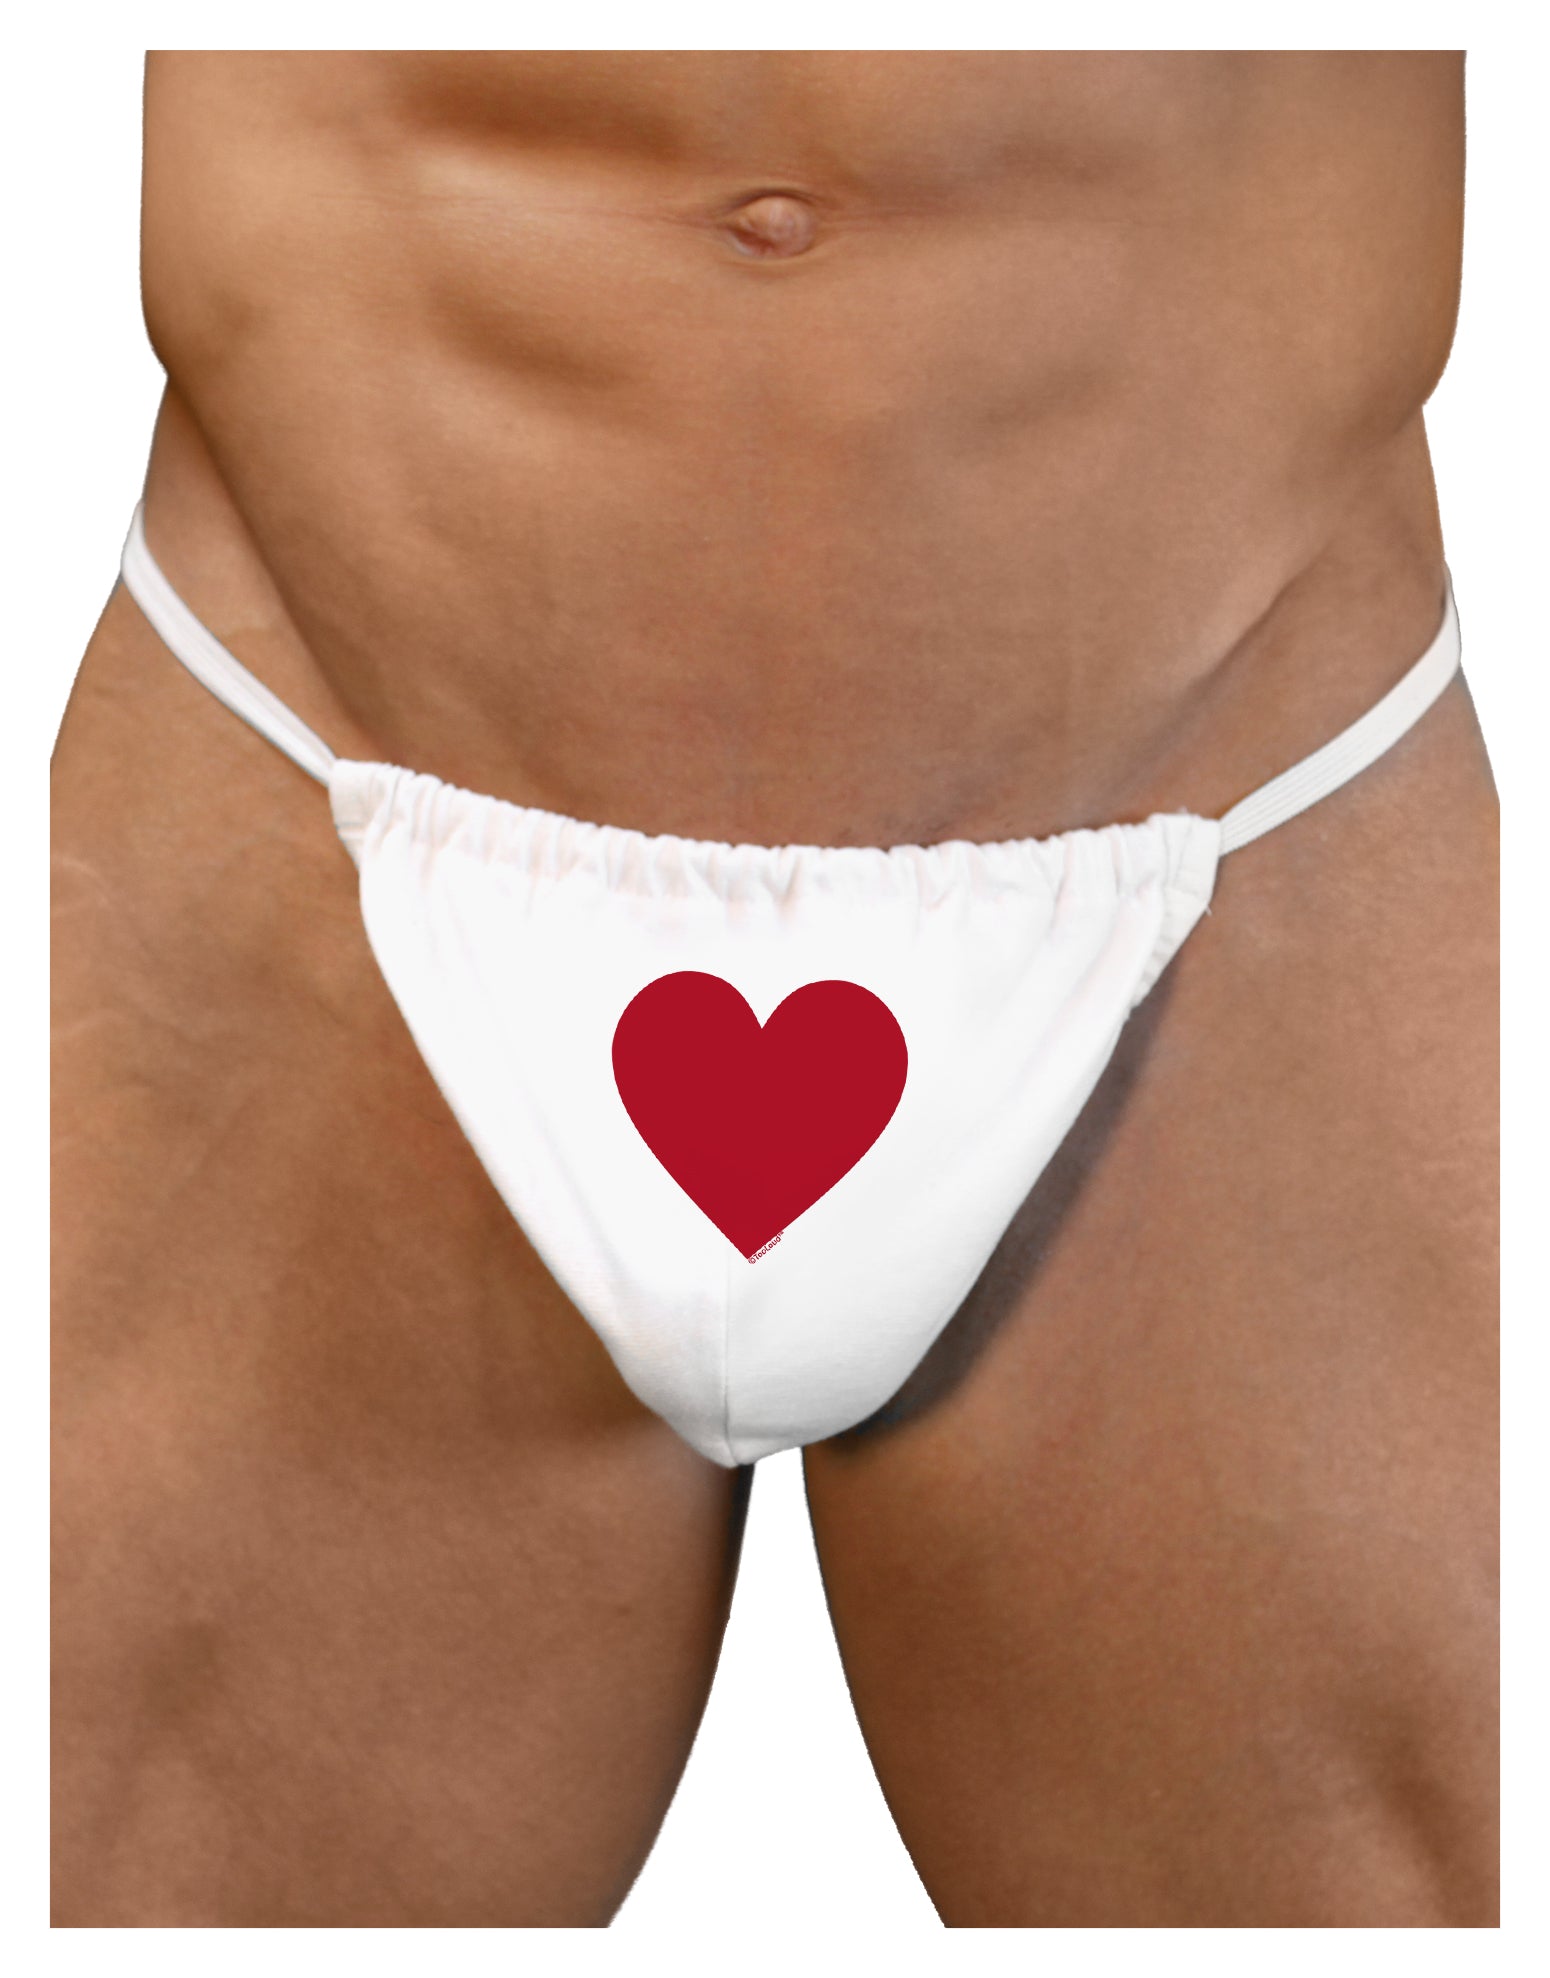 Big Red Heart Valentine's Day Mens G-String Underwear - Davson Sales